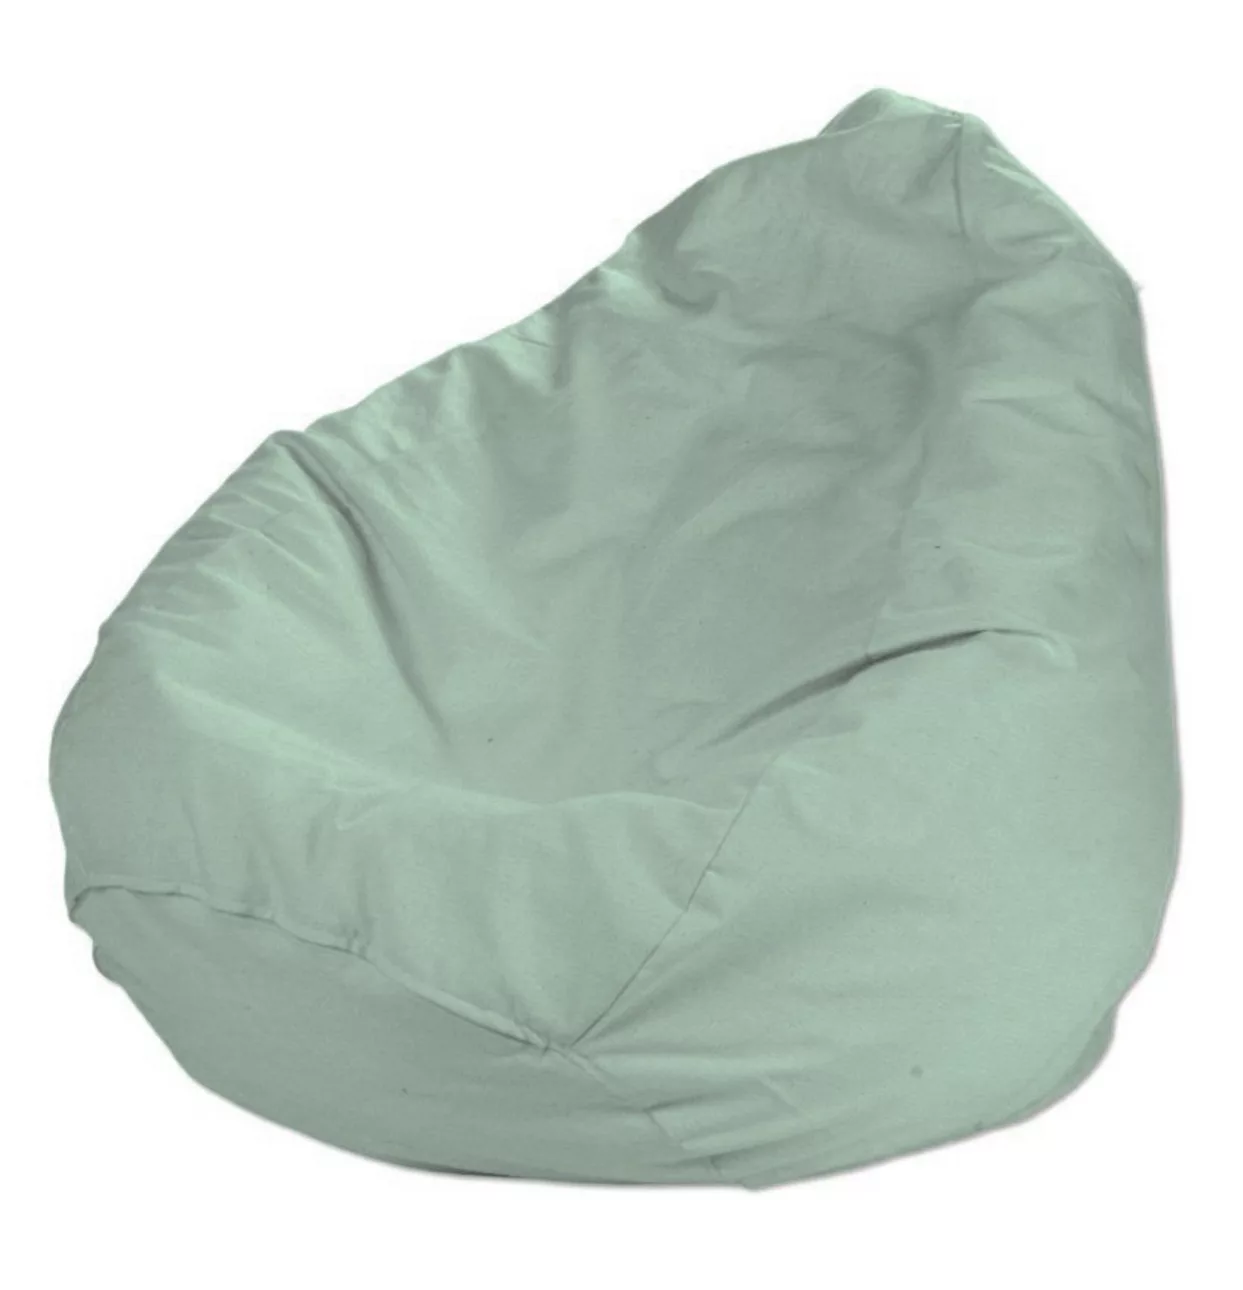 Bezug für Sitzsack, grün, Bezug für Sitzsack Ø60 x 105 cm, Loneta (133-61) günstig online kaufen